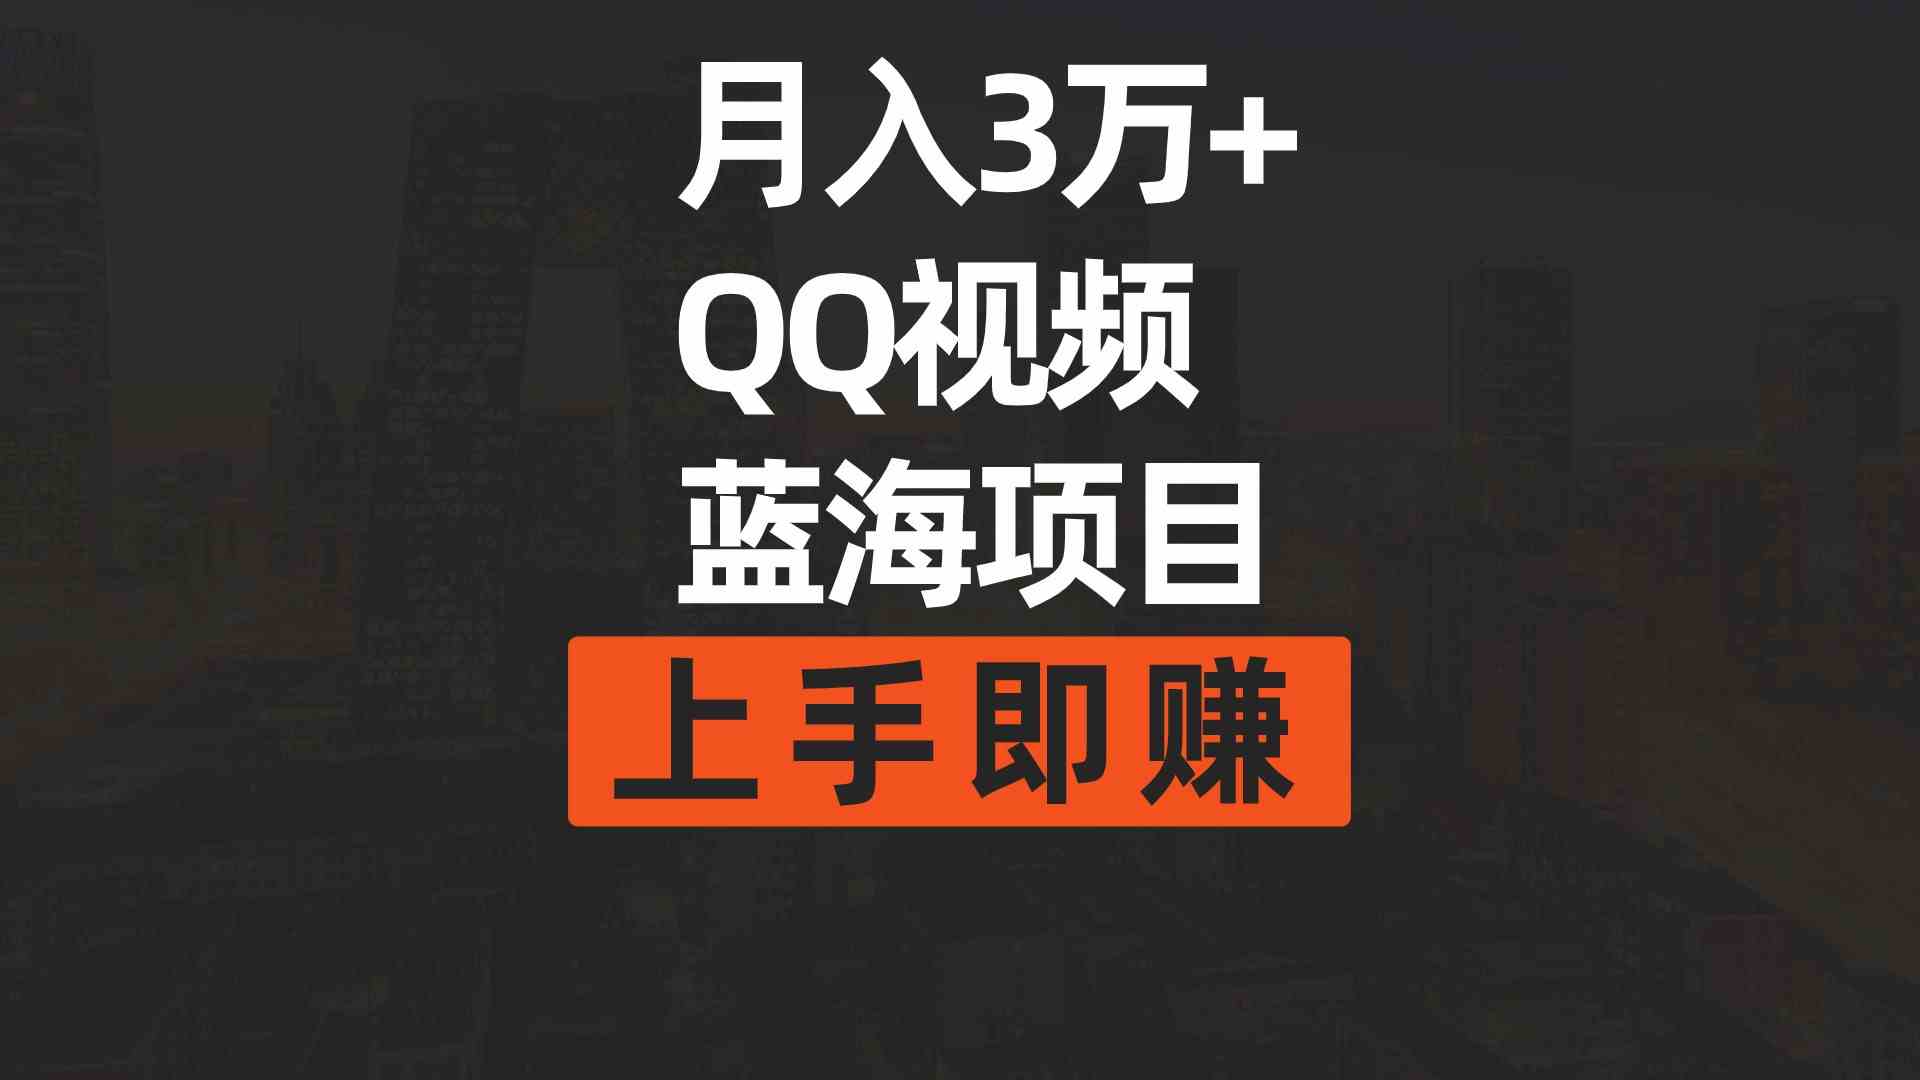 （9503期）月入3万+ 简单搬运去重QQ视频蓝海赛道  上手即赚-学海无涯网